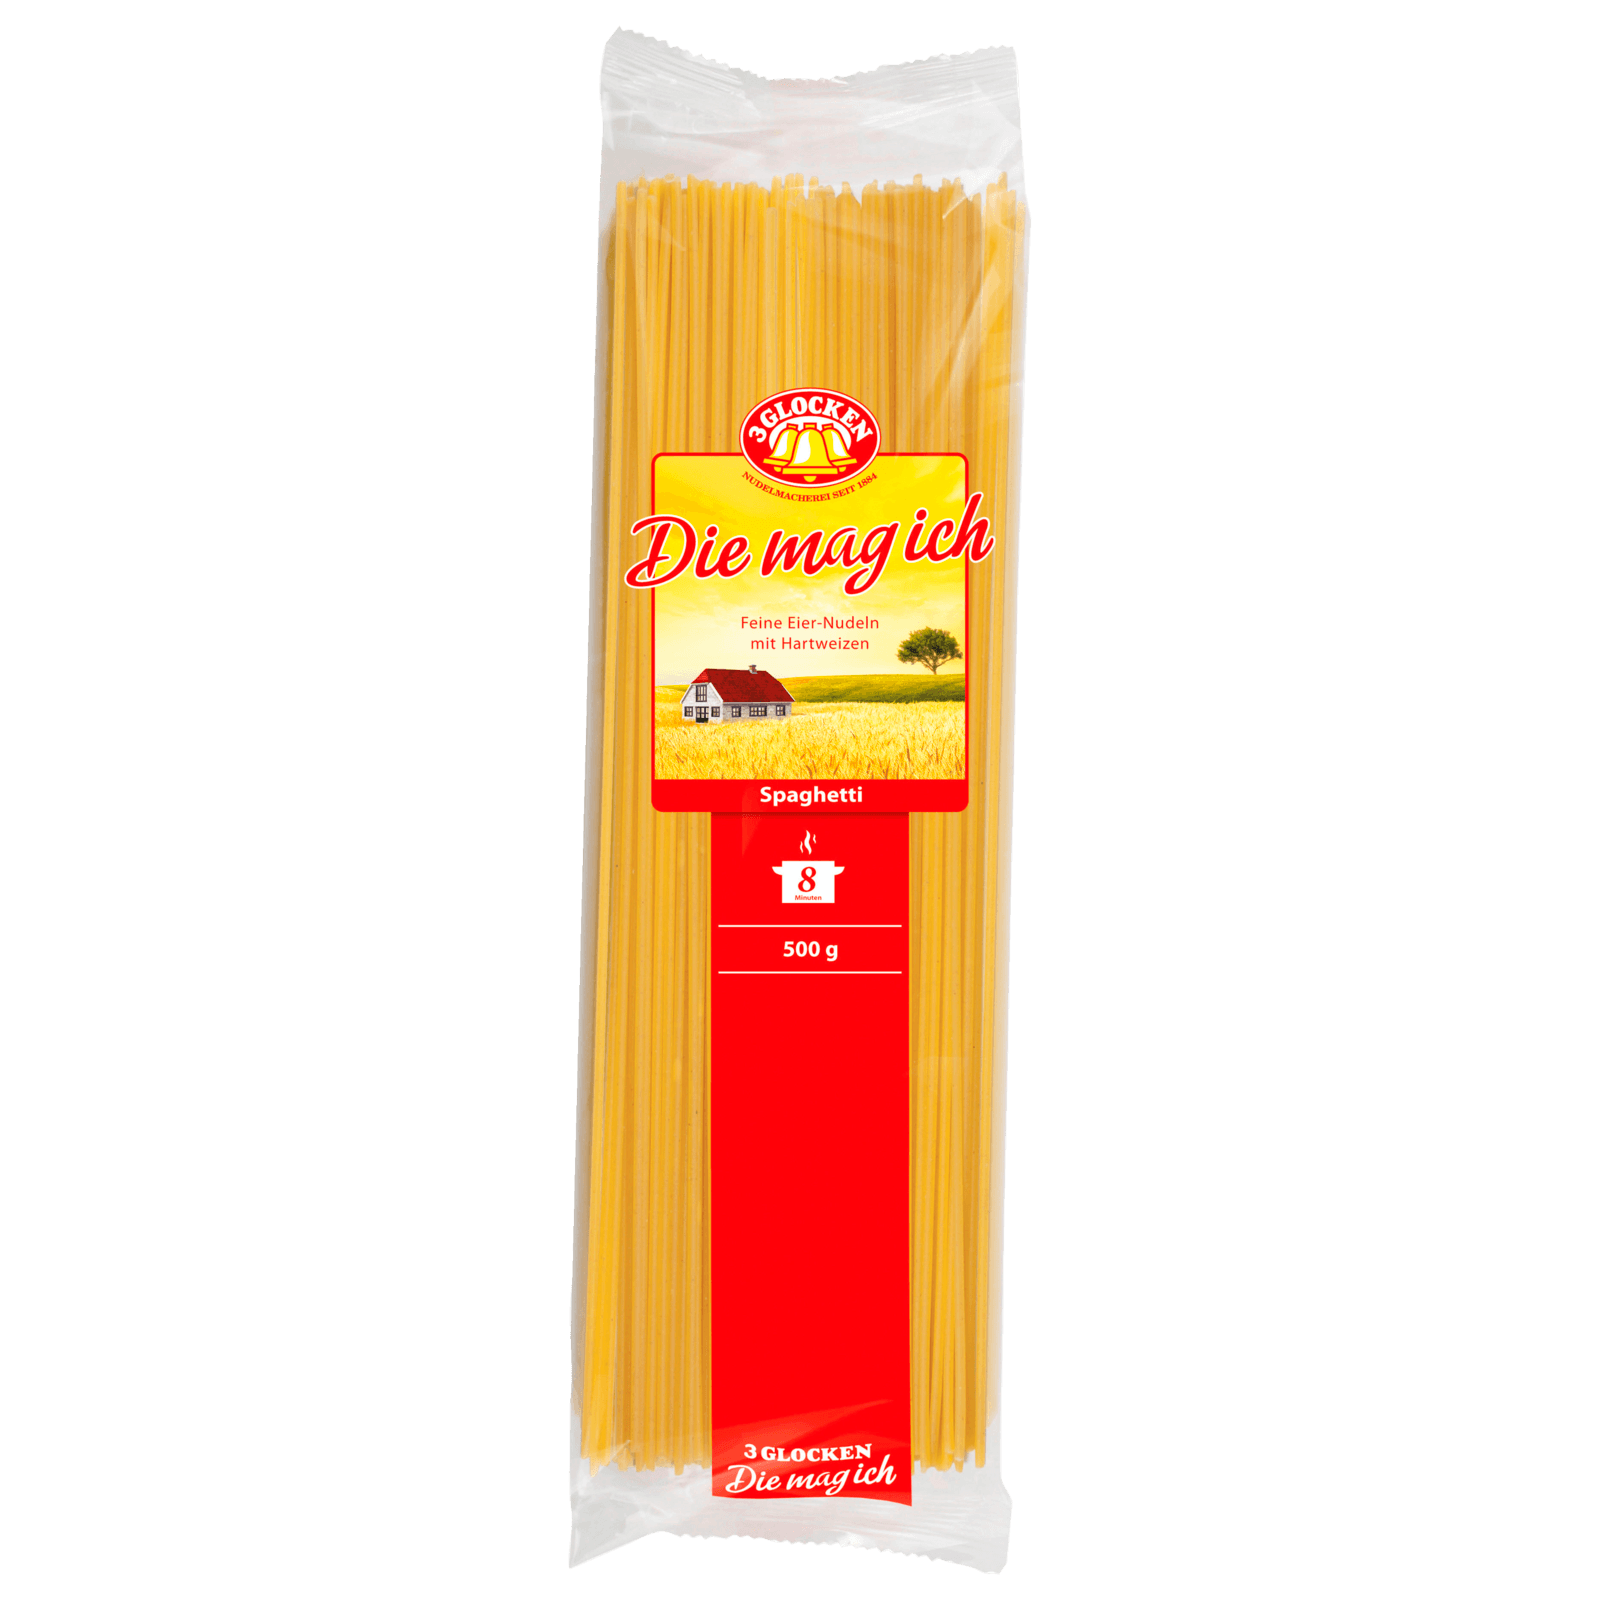 3 Glocken Die Mag Ich Spaghetti 500g Bei Rewe Online Bestellen